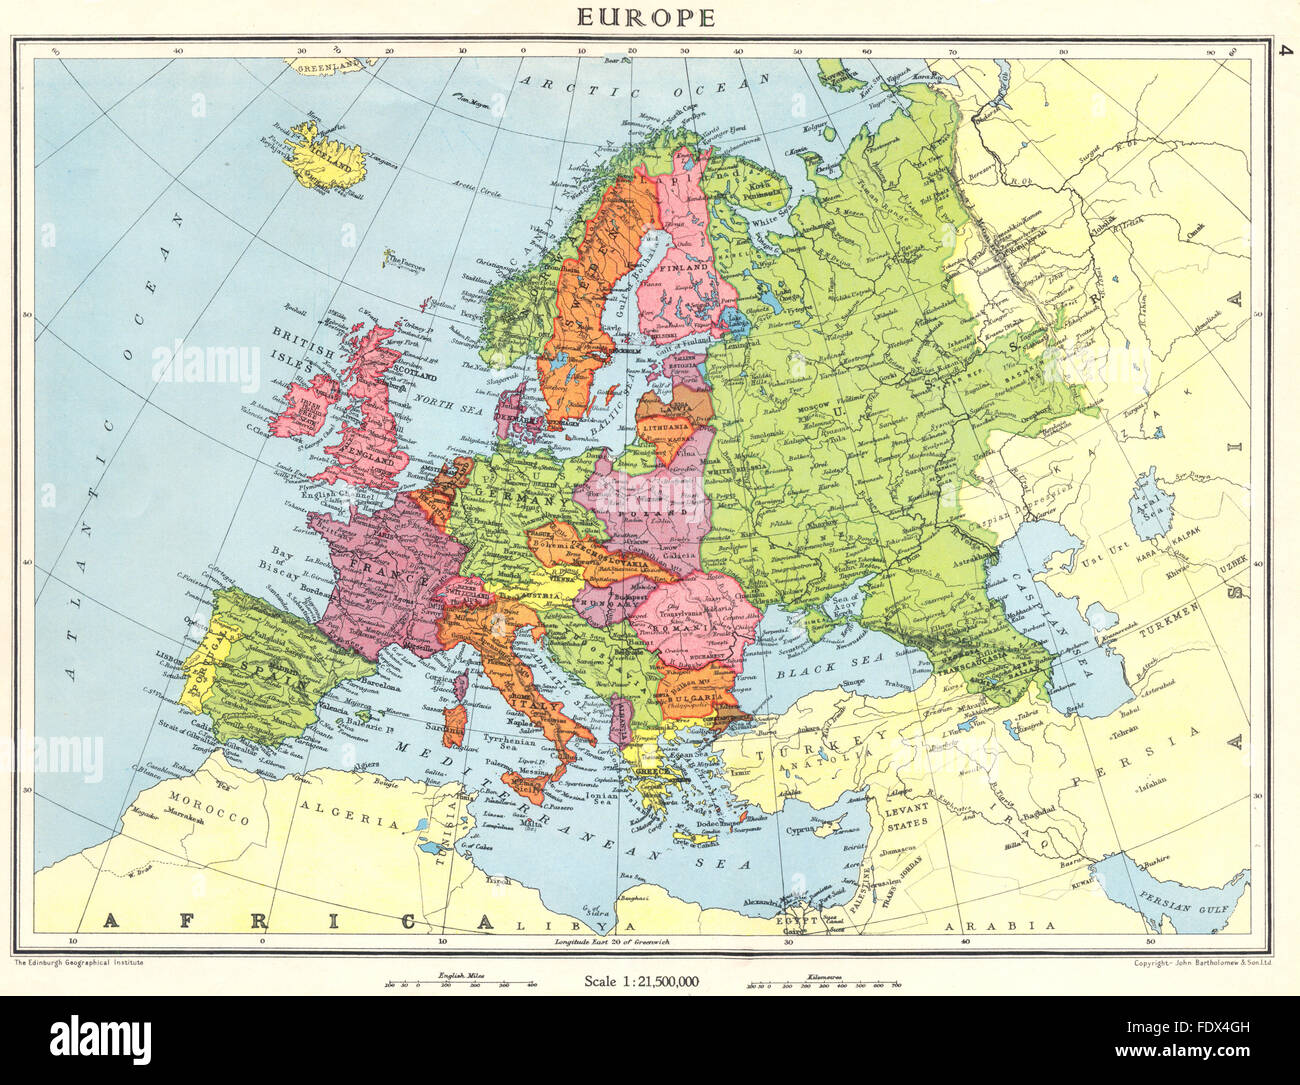 Europa: Europa kurz vor dem 2. Weltkrieg, 1938 Vintage Karte Stockfoto